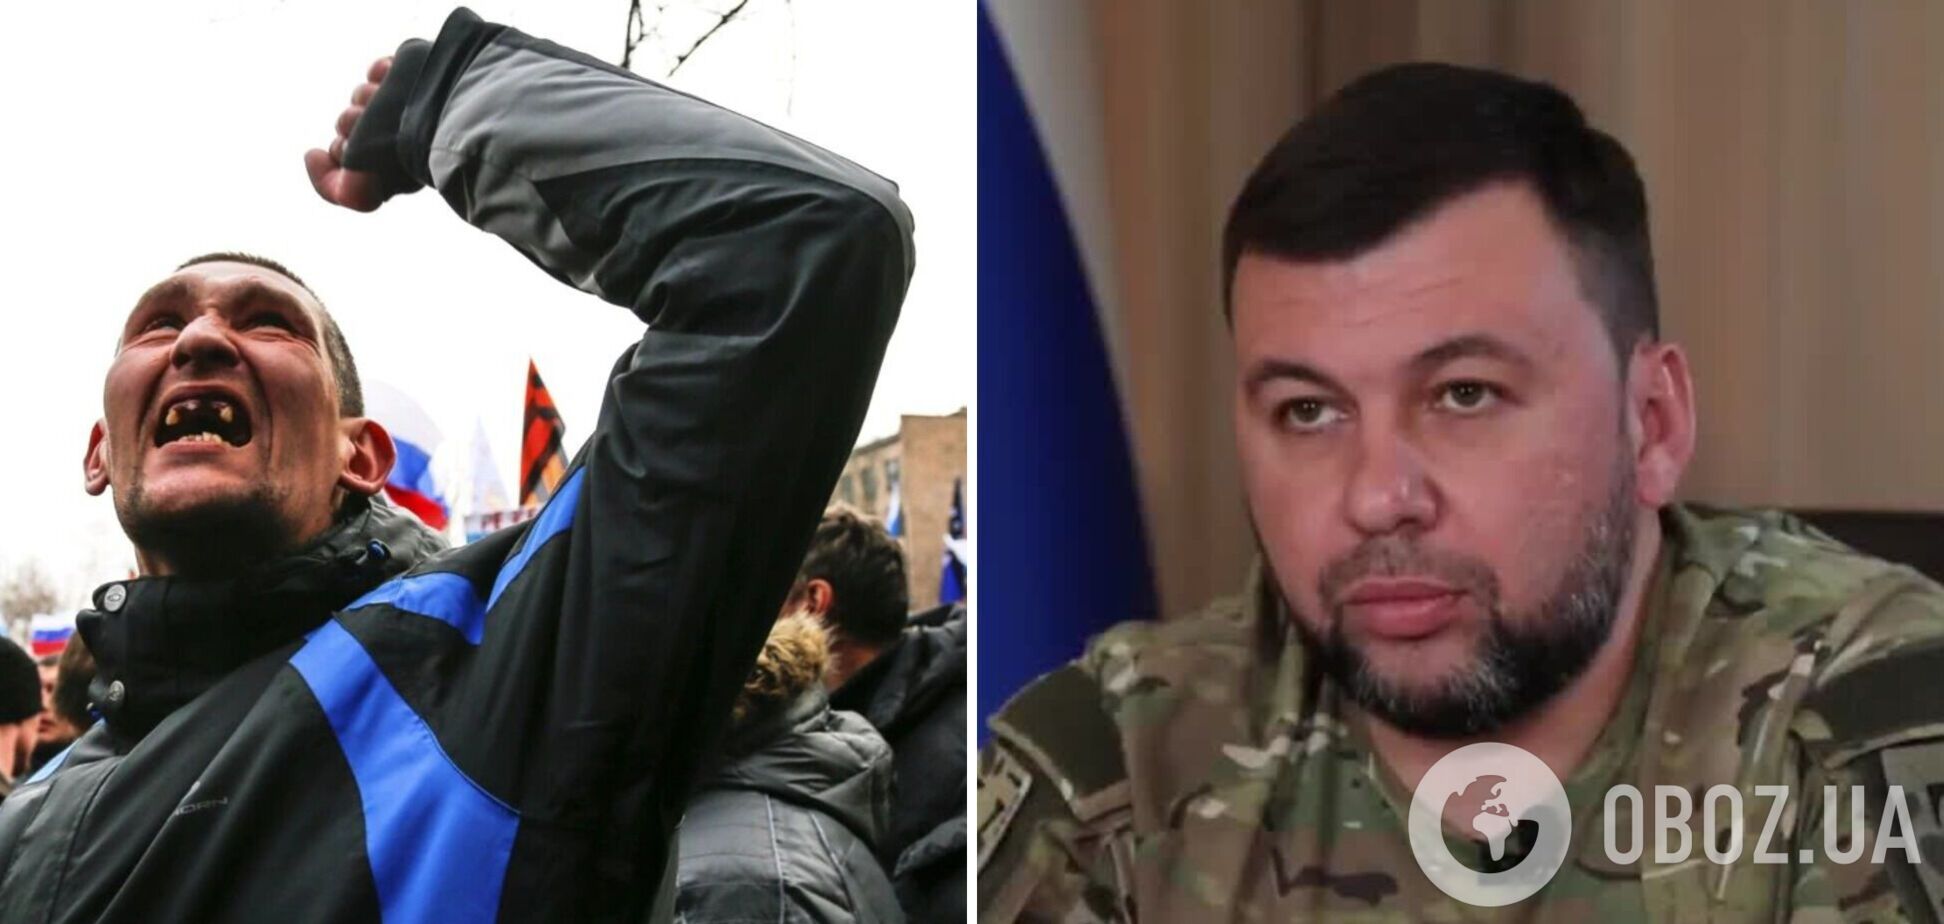 Скандальное интервью преступника Пушилина: как вождь сепаратистов стал положительным героем в сербском СМИ?